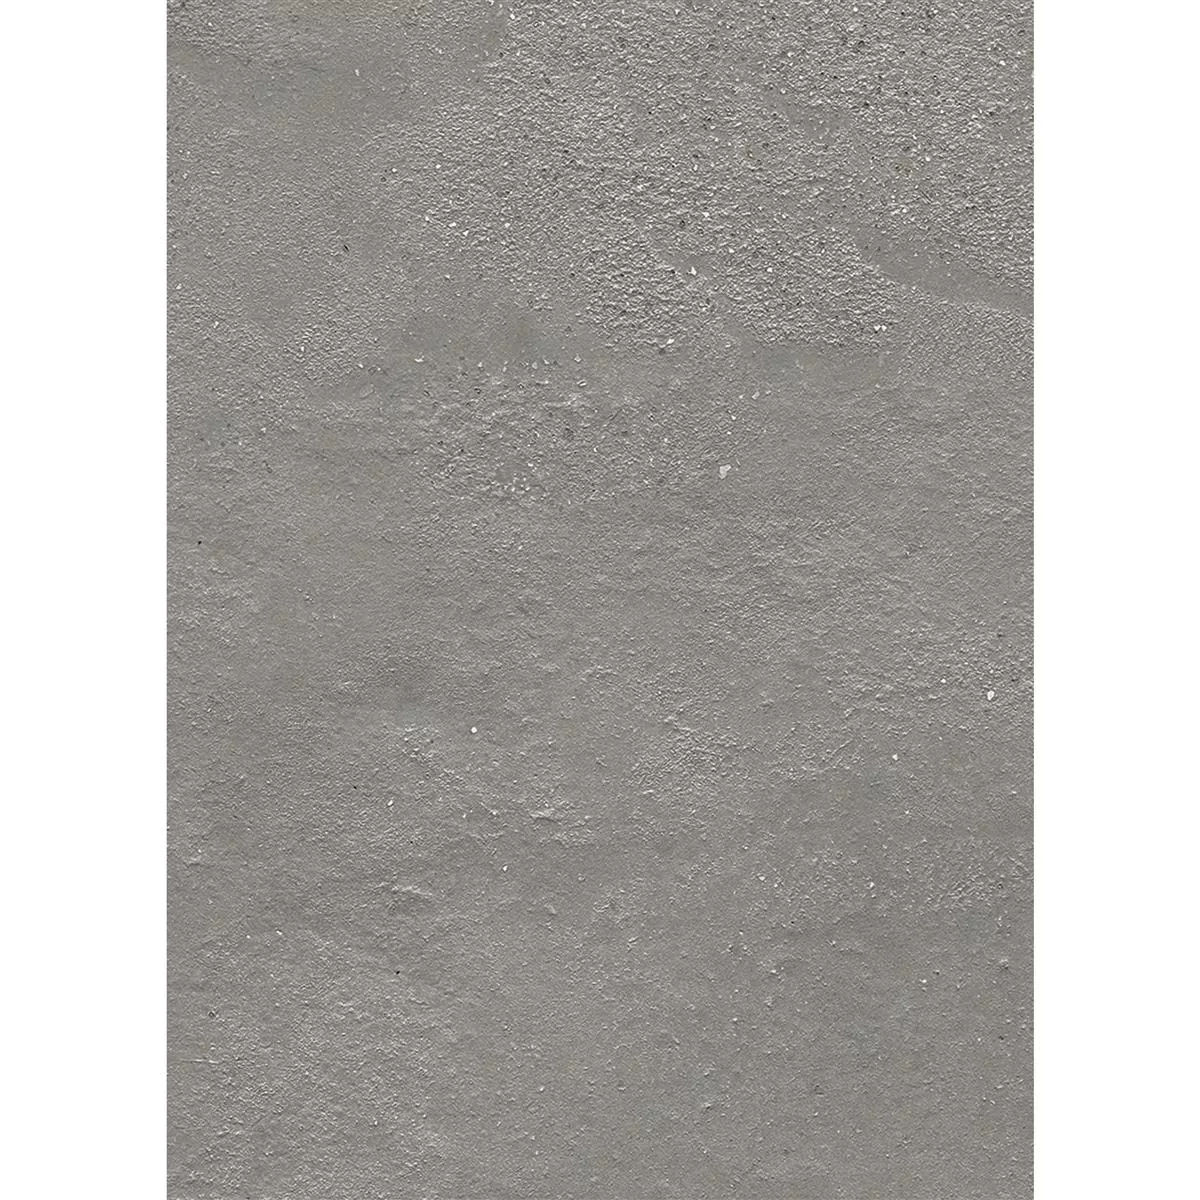 Piastrelle Malibu Cemento Ottica Grigio Chiaro 60x120cm